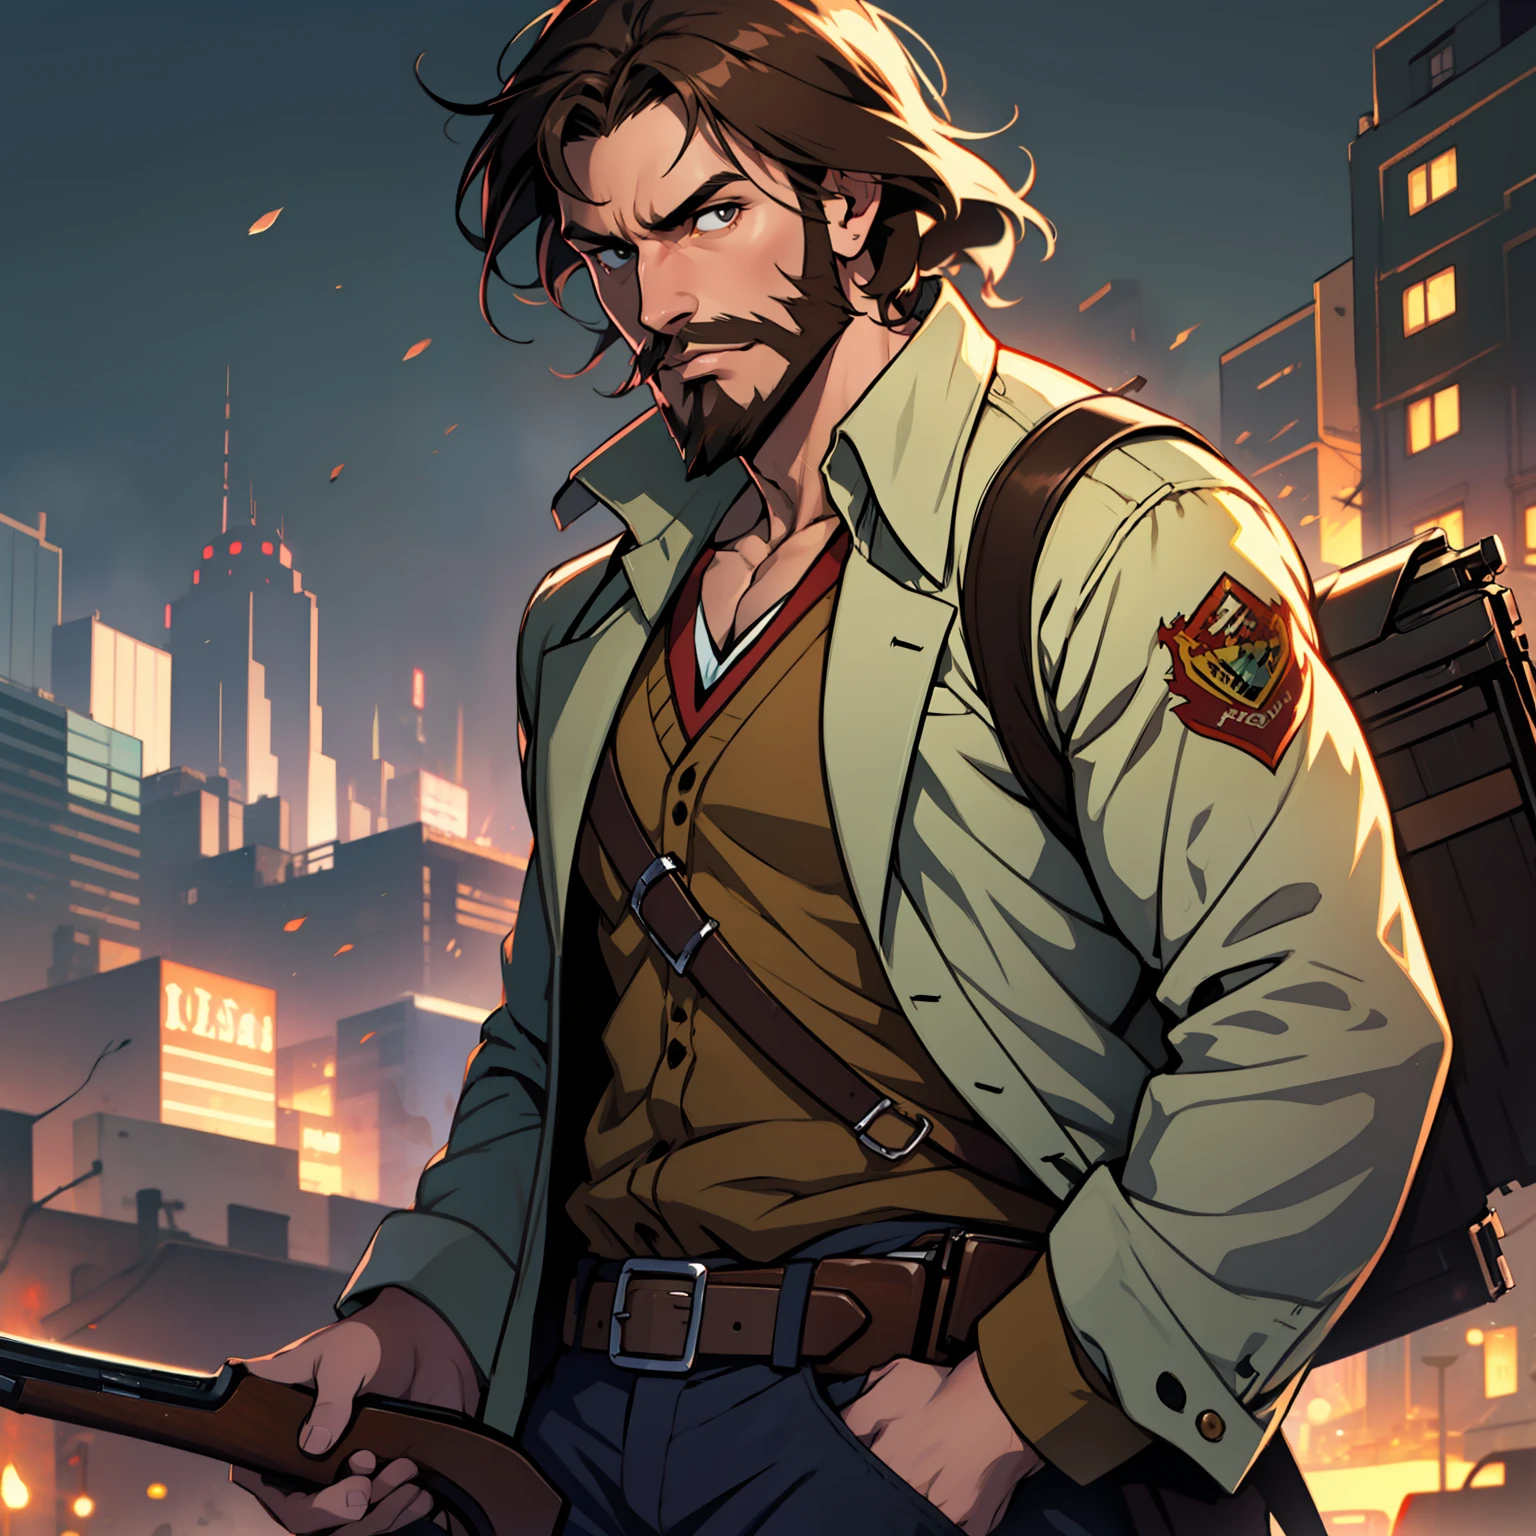 Allein, Anime-Typ mit braunen Haaren und struppigem braunem Bart, der ein Winchester-Gewehr hält, dynamische Beleuchtung